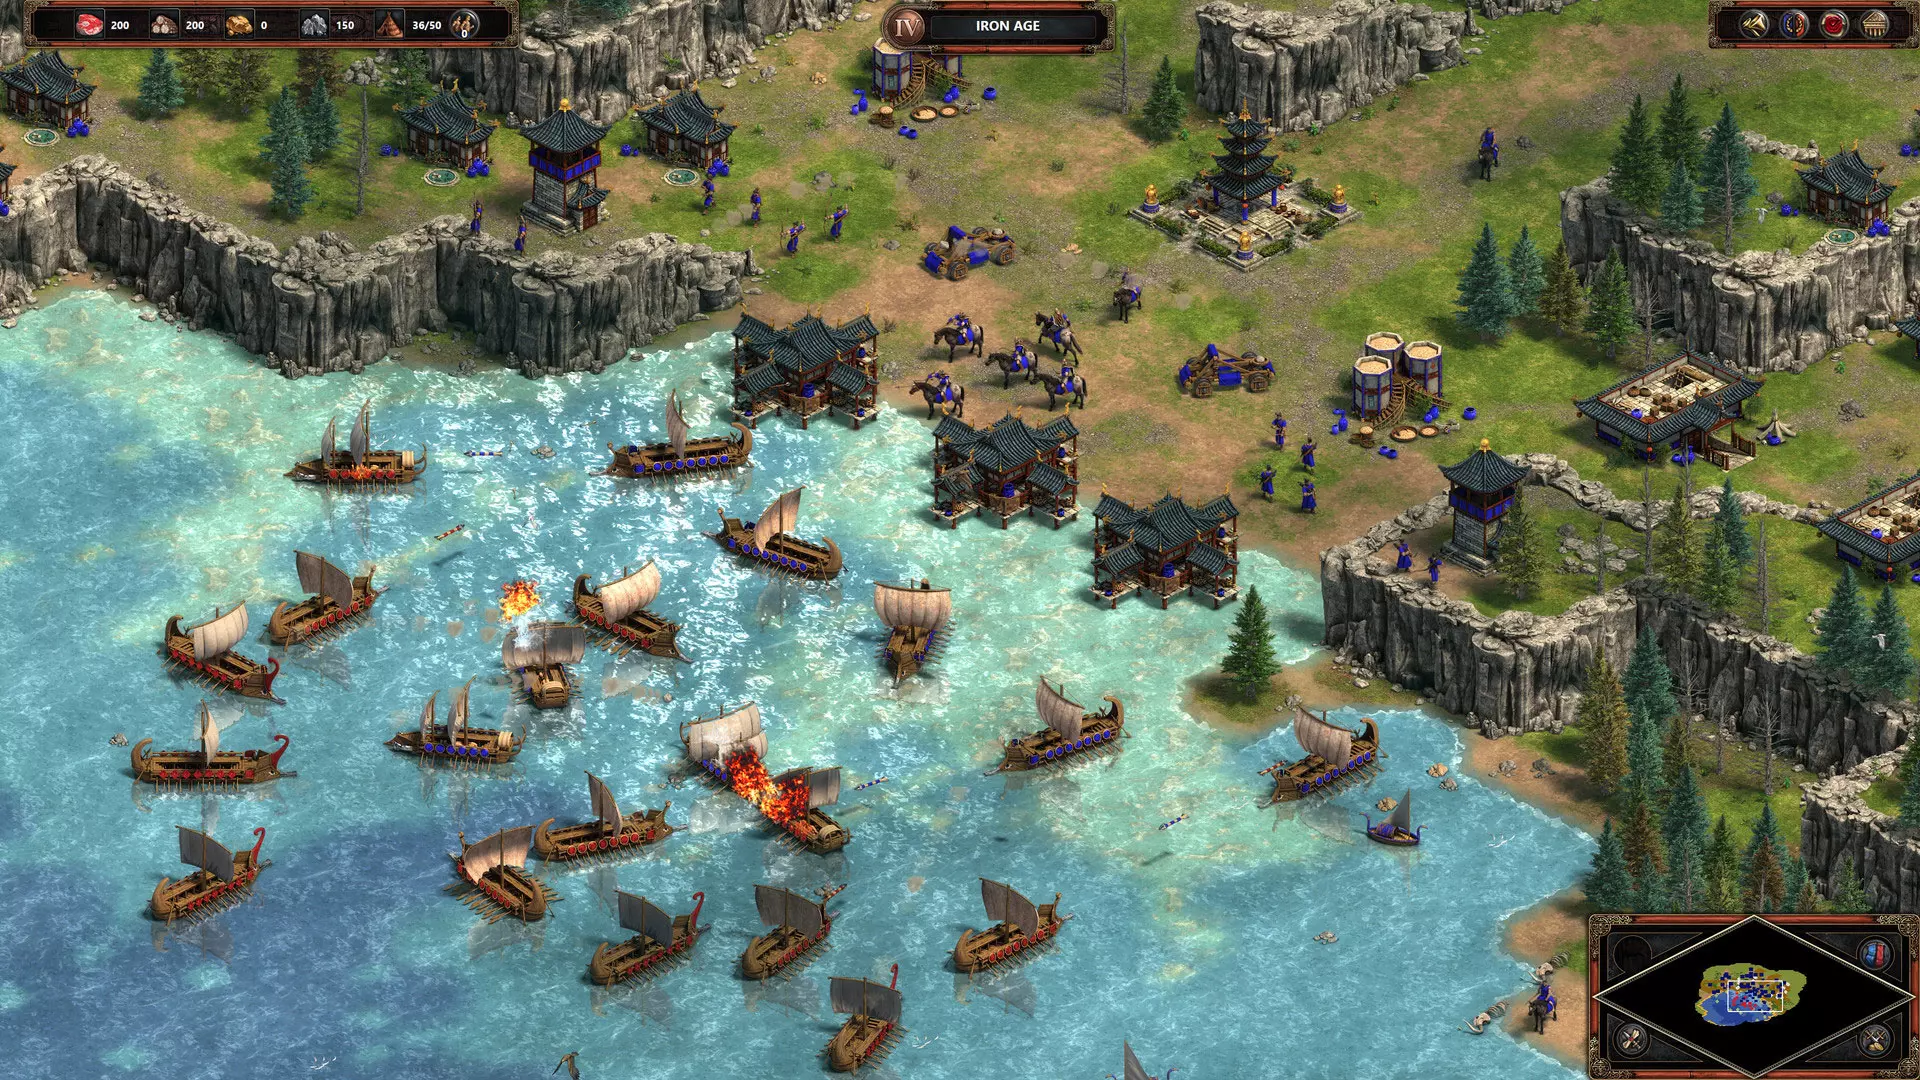 Imagem do jogo Age of Empires Definitive Edition, na qual barcos do exército vermelho atacam barcos do exército azul que possui uma cidade costeira próxima